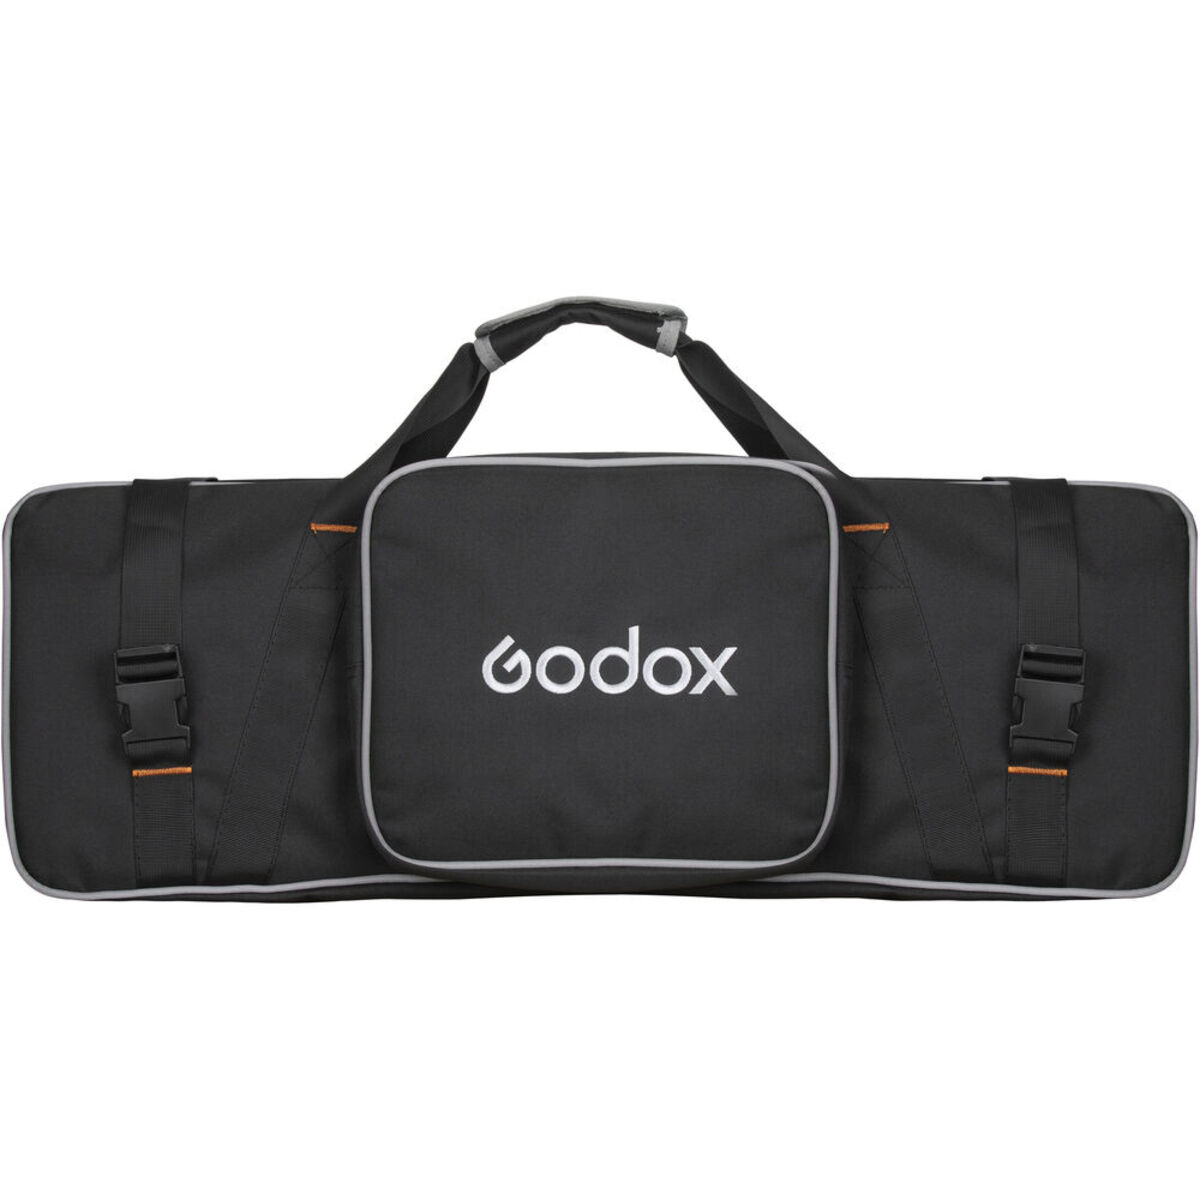 Godox Litemons LA200Bi Bi-color Duo Kit